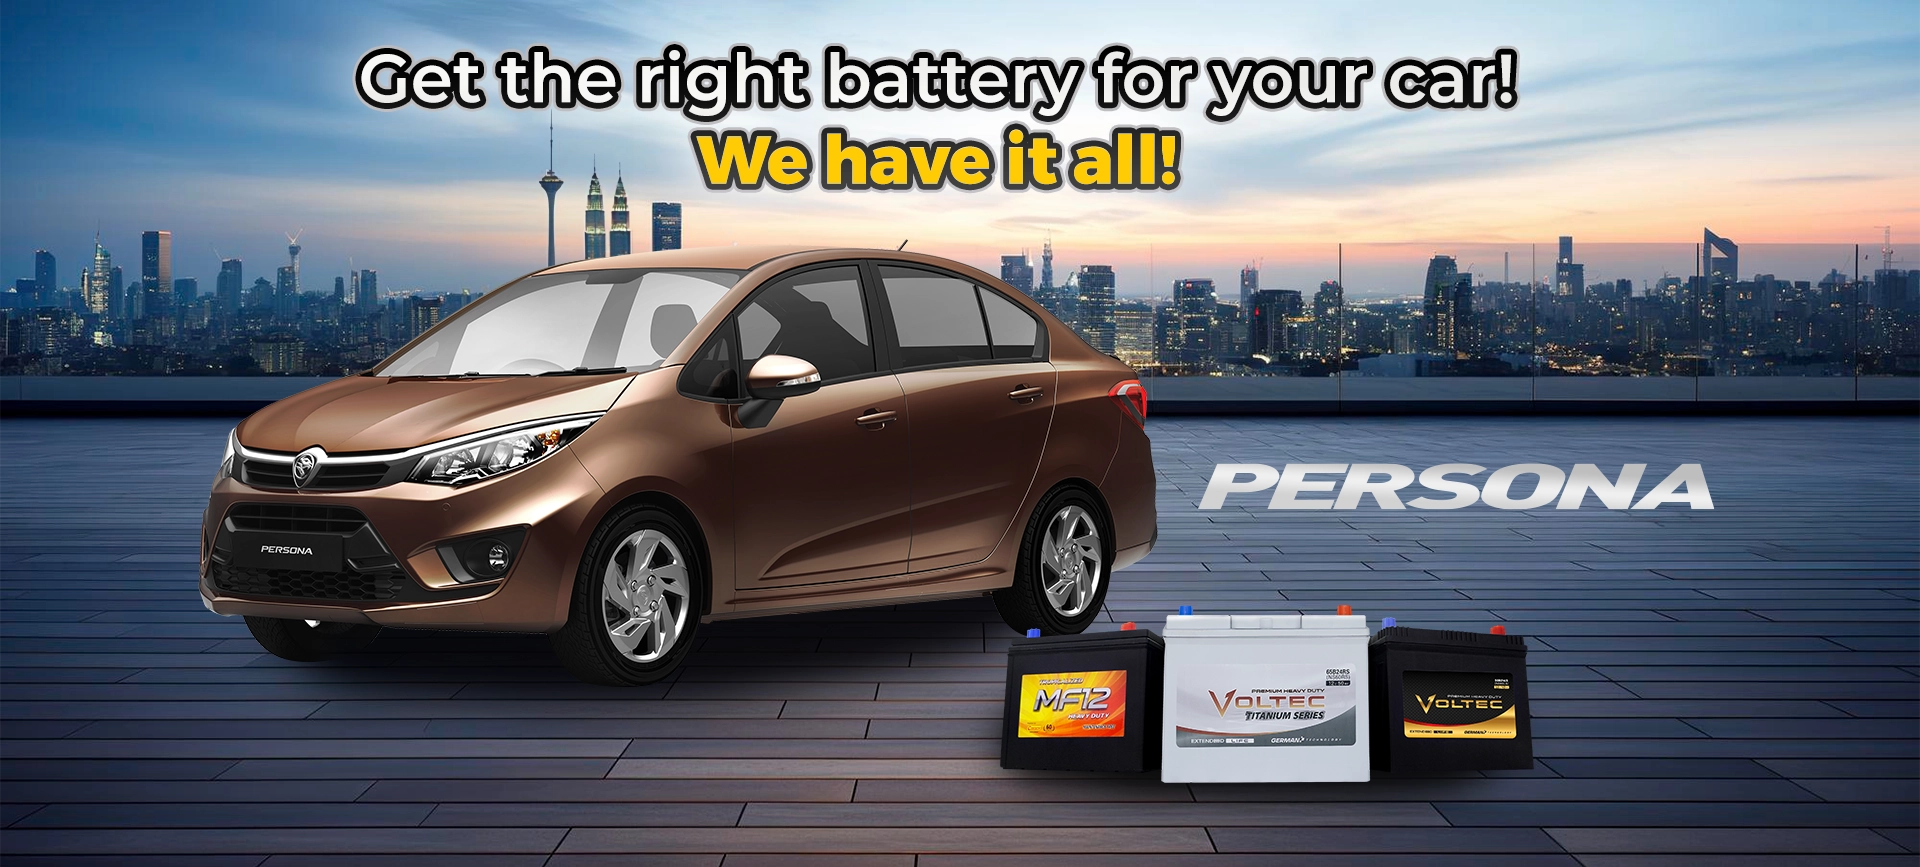 Proton persona car battery price